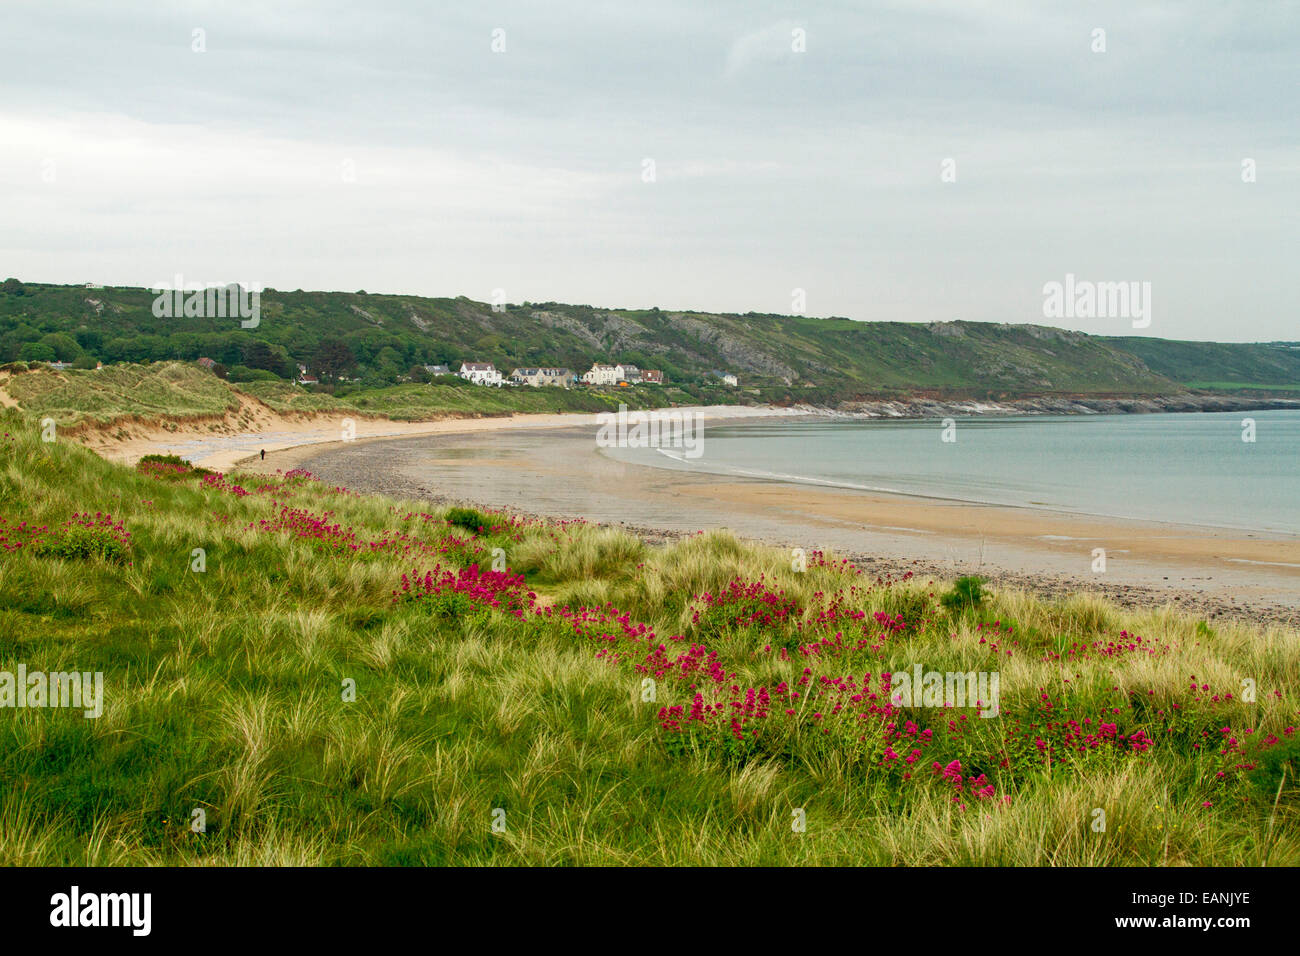 Spiaggia sabbiosa e ampia baia con erba di smeraldo e il rosso della valeriana fiori selvaggi sulle dune basse vicino al villaggio di Port Eynon, Galles Foto Stock